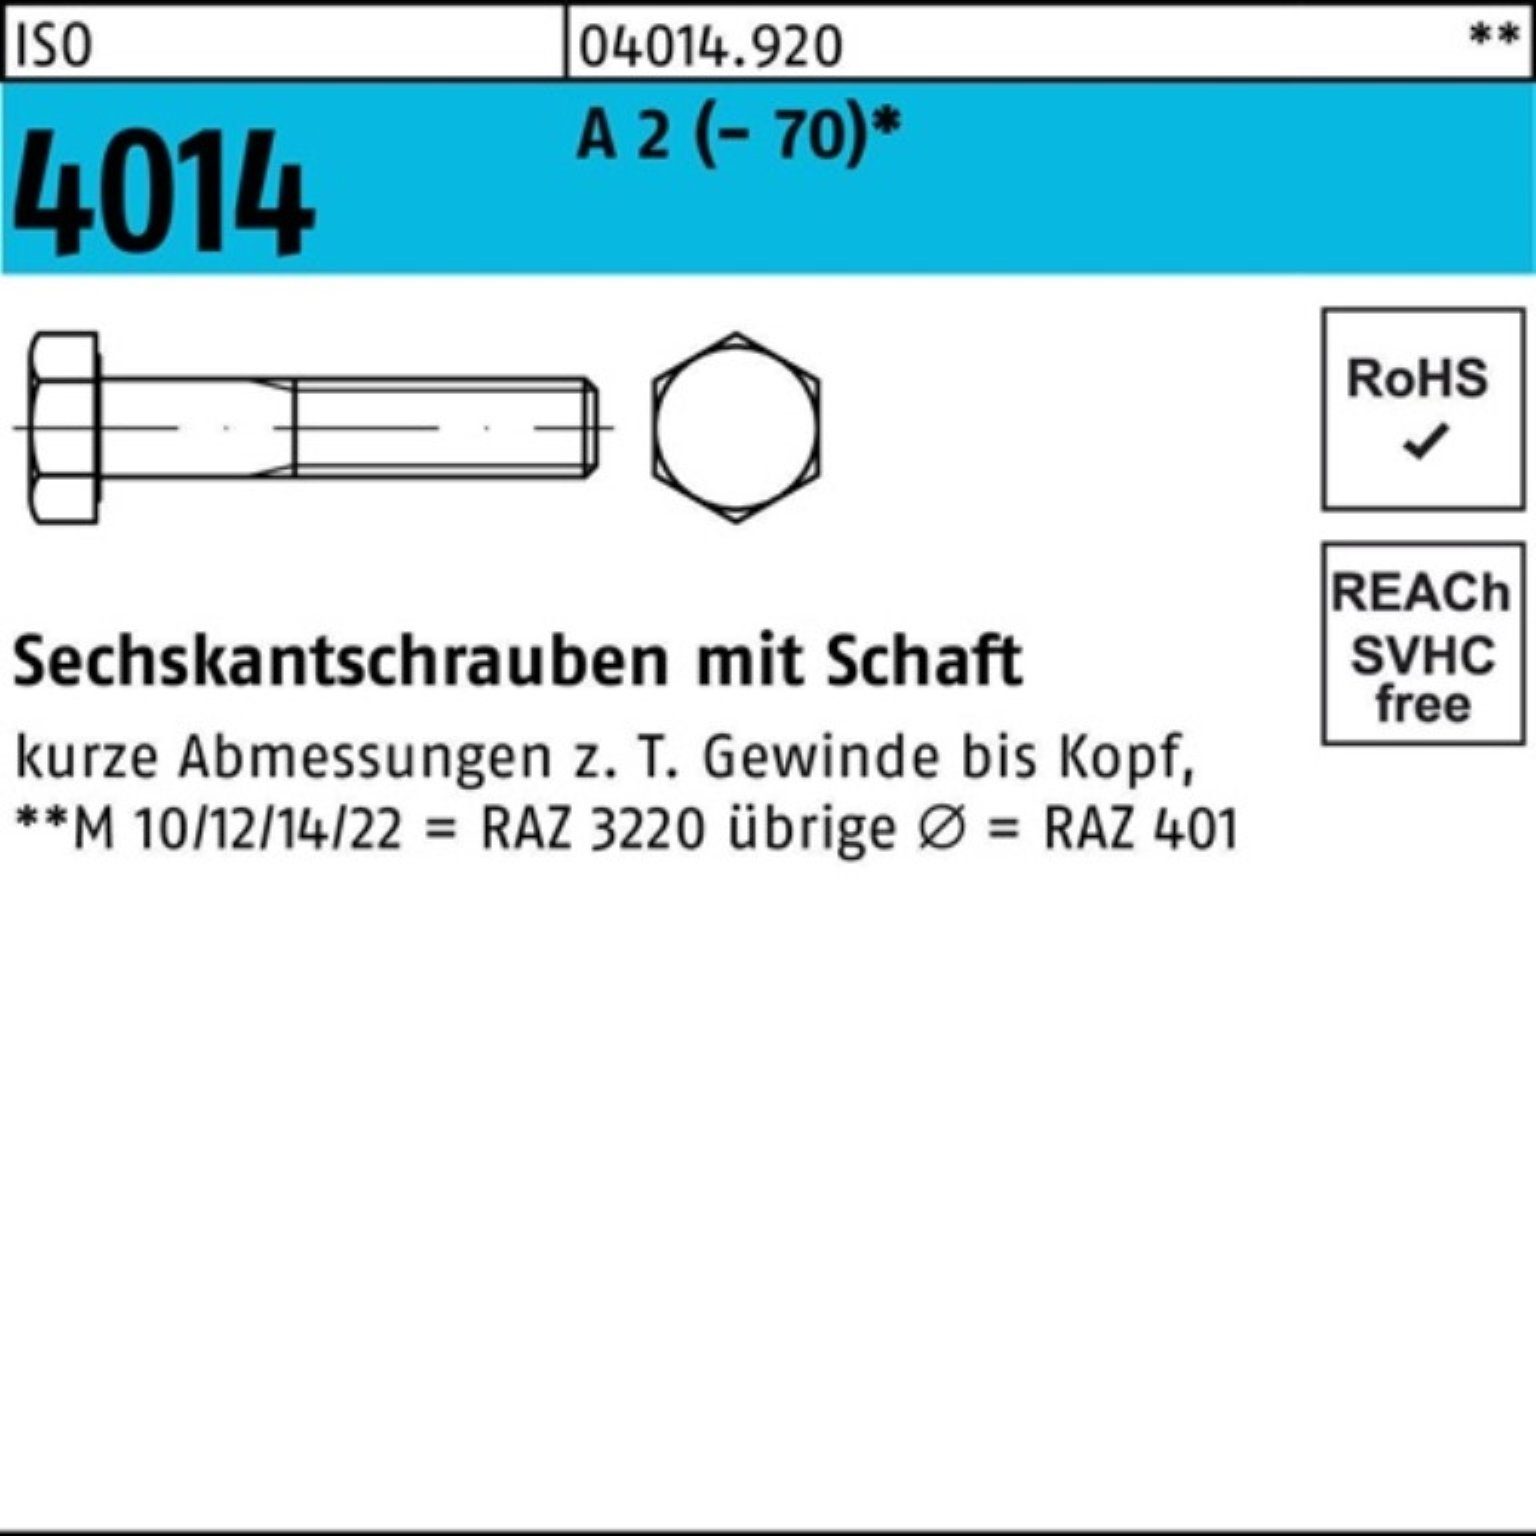 St 4014 (70) ISO Schaft 100er 1 A Pack 2 190 Sechskantschraube Sechskantschraube M12x Bufab